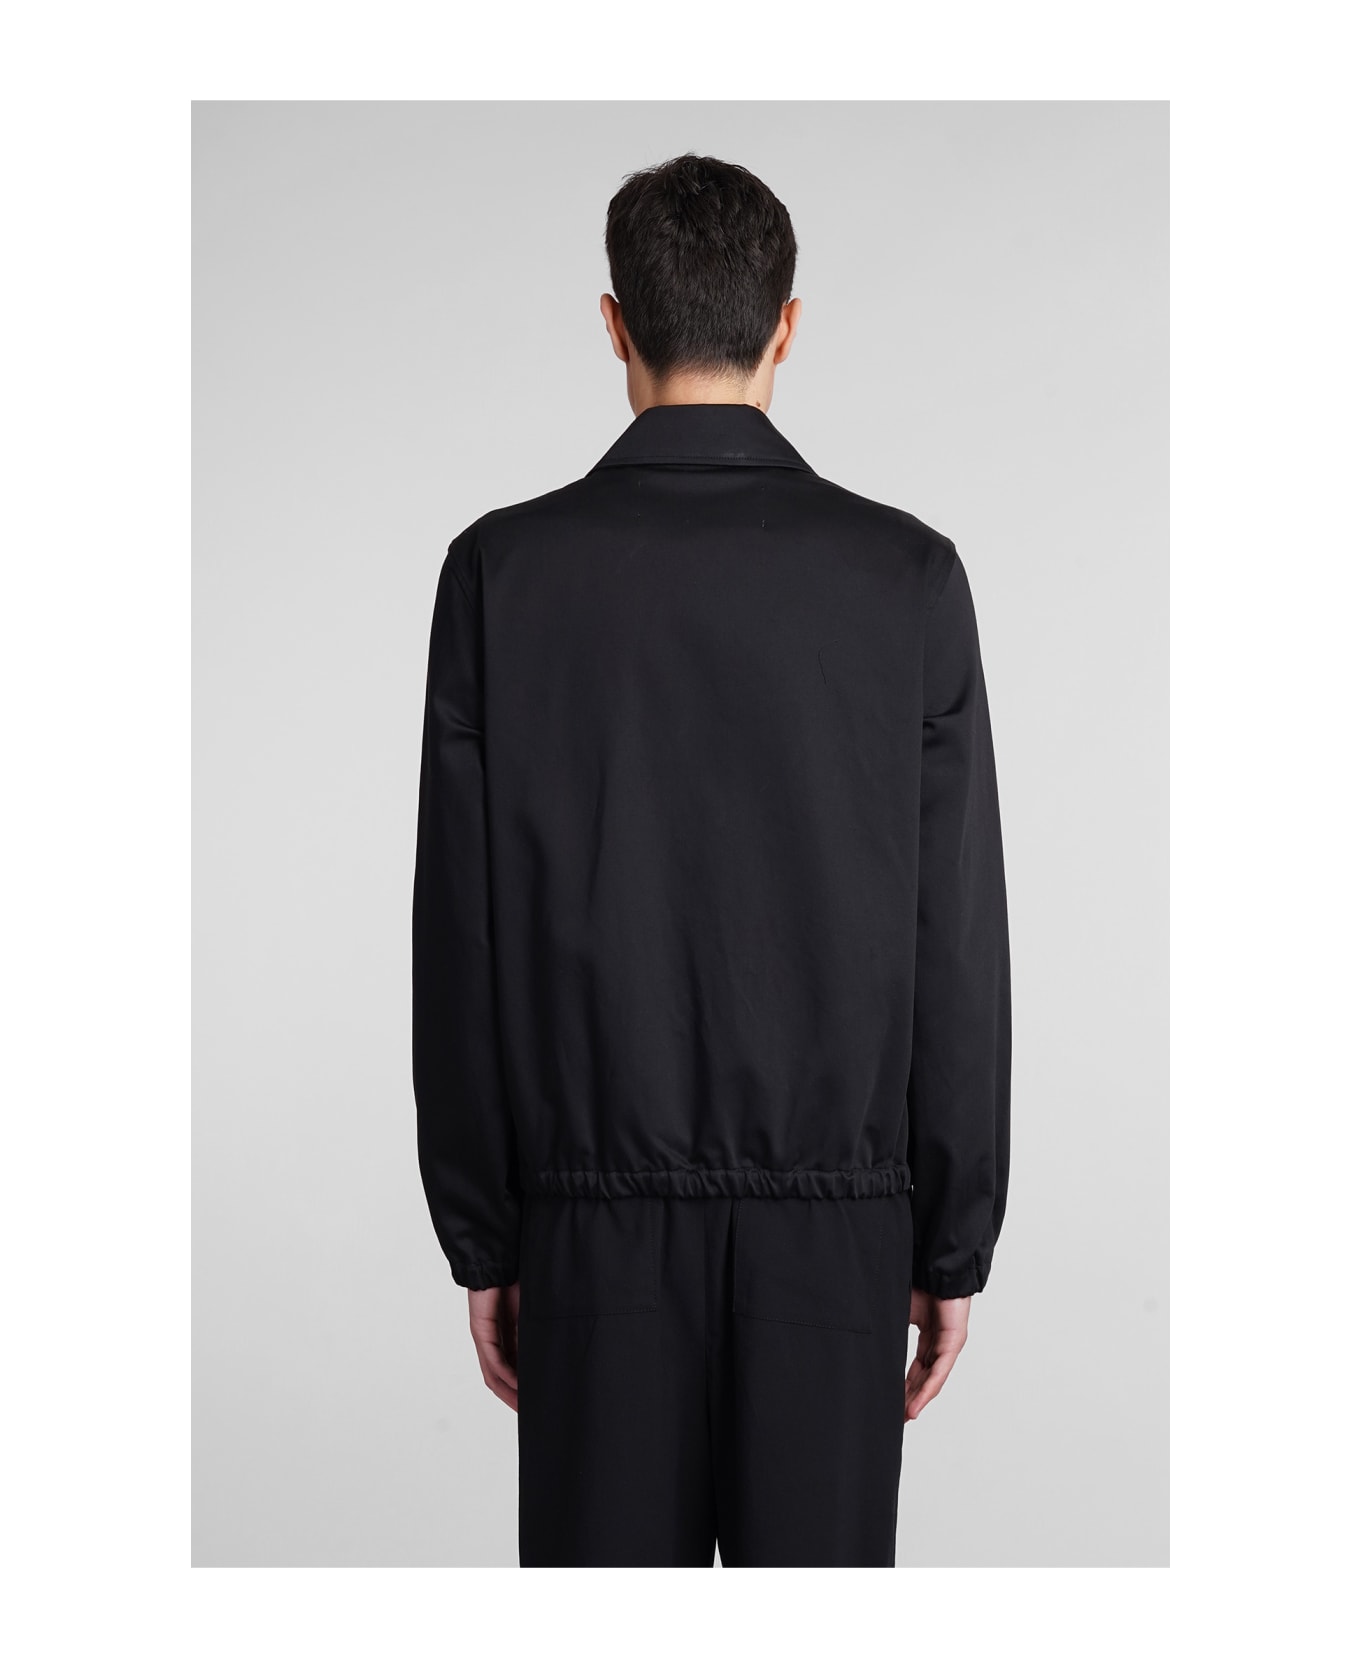 Ami Alexandre Mattiussi Casual Jacket In Black Cotton - black